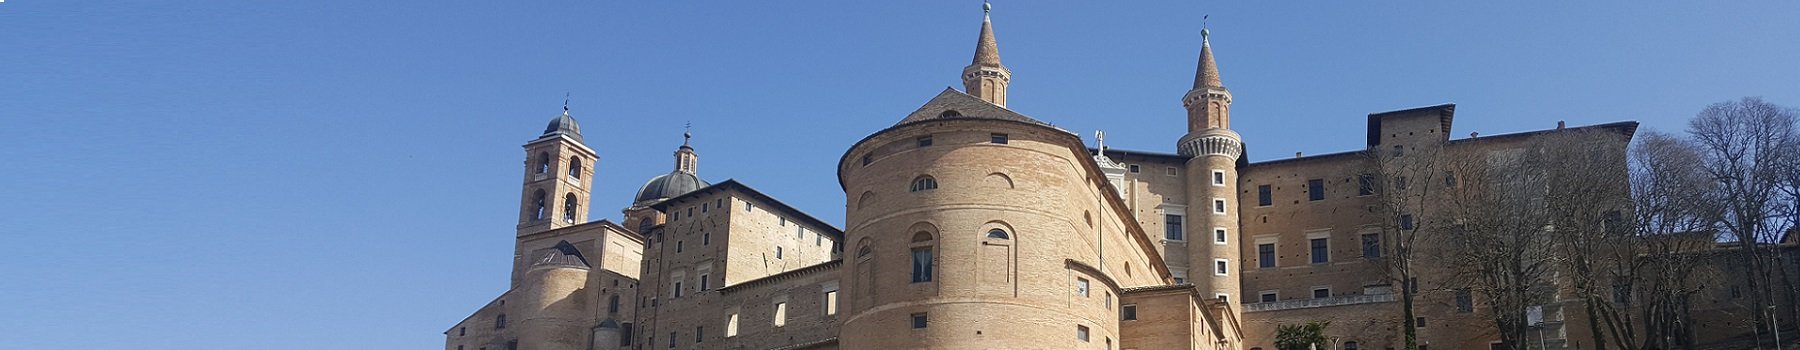 Visitare Urbino in Autobus da Rimini e dintorni, Riccione, Cattolica e Cesenatico